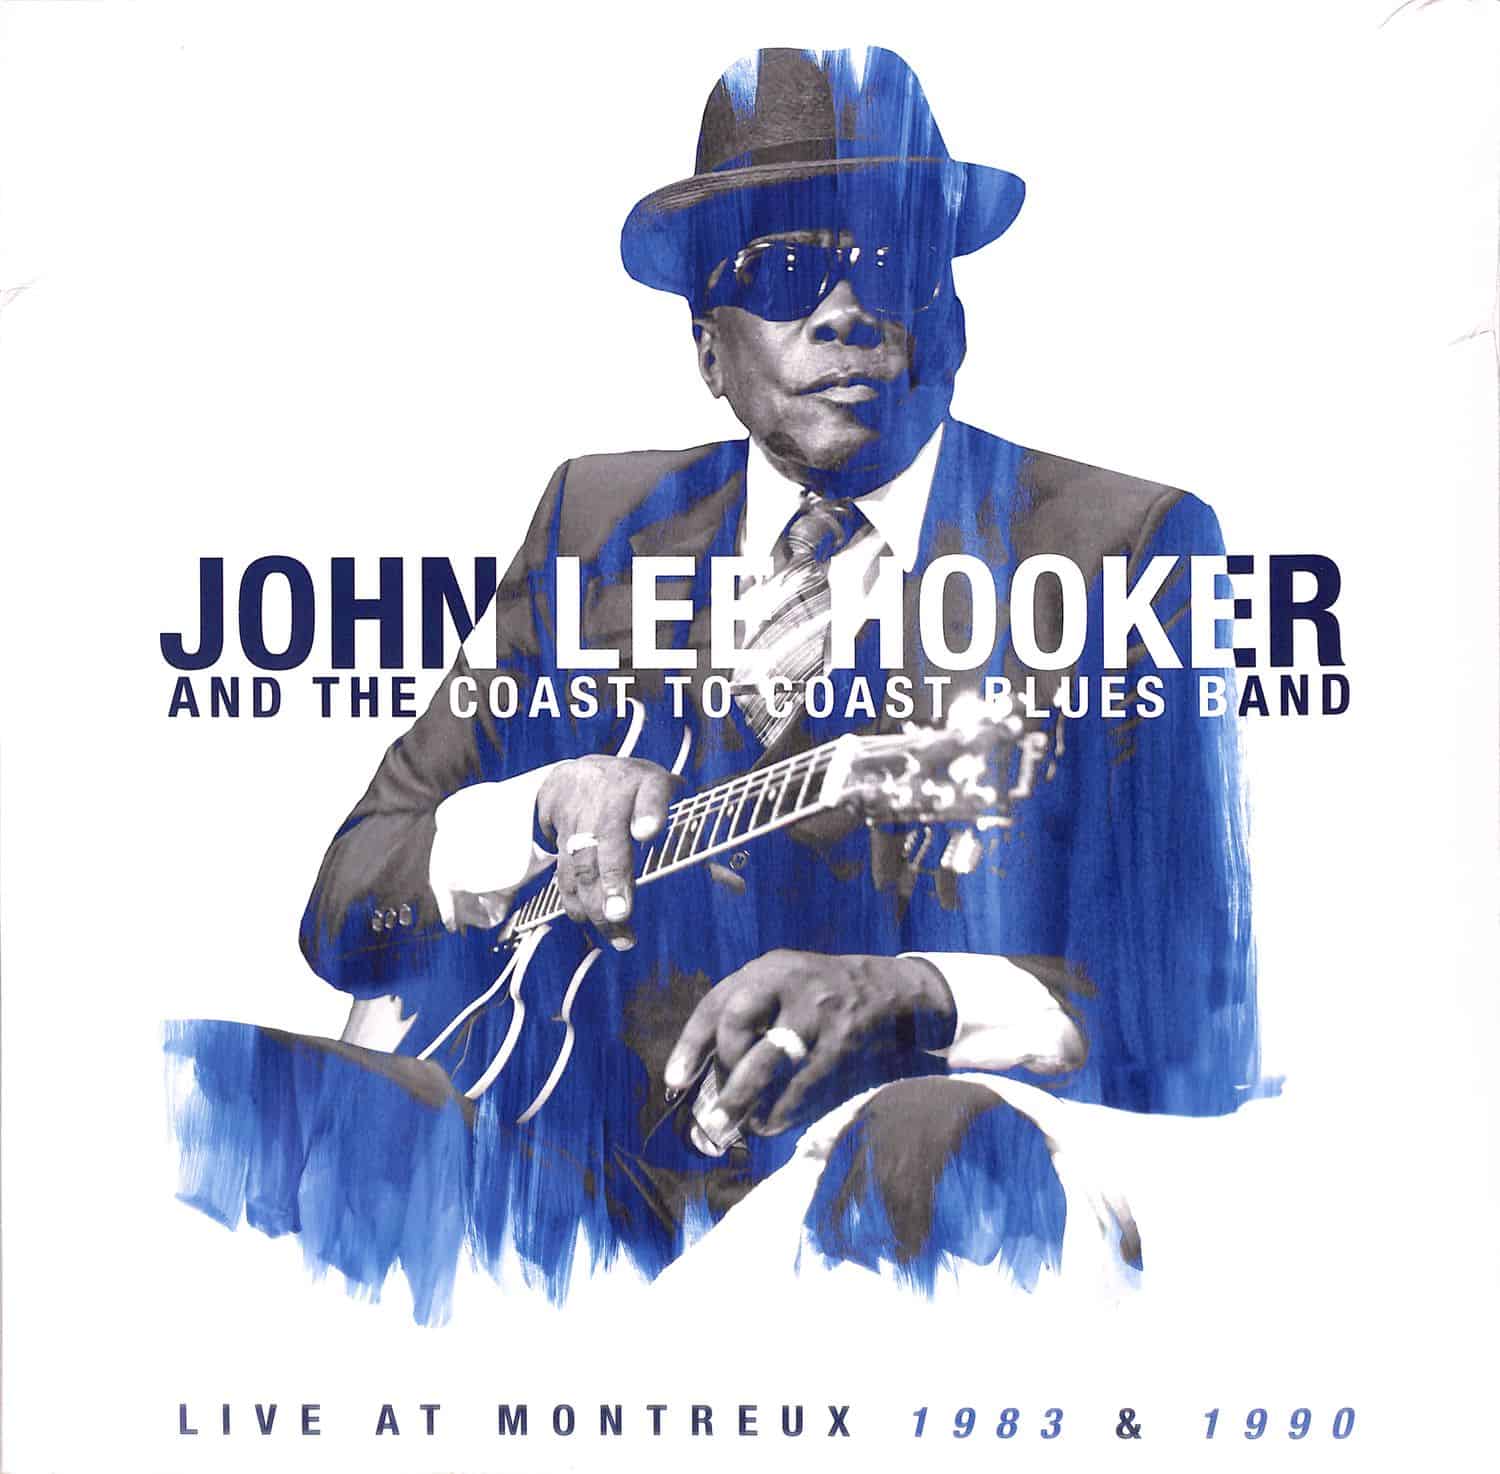 John Lee Hooker - LIVE AT MONTREUX 1983 & 1990 